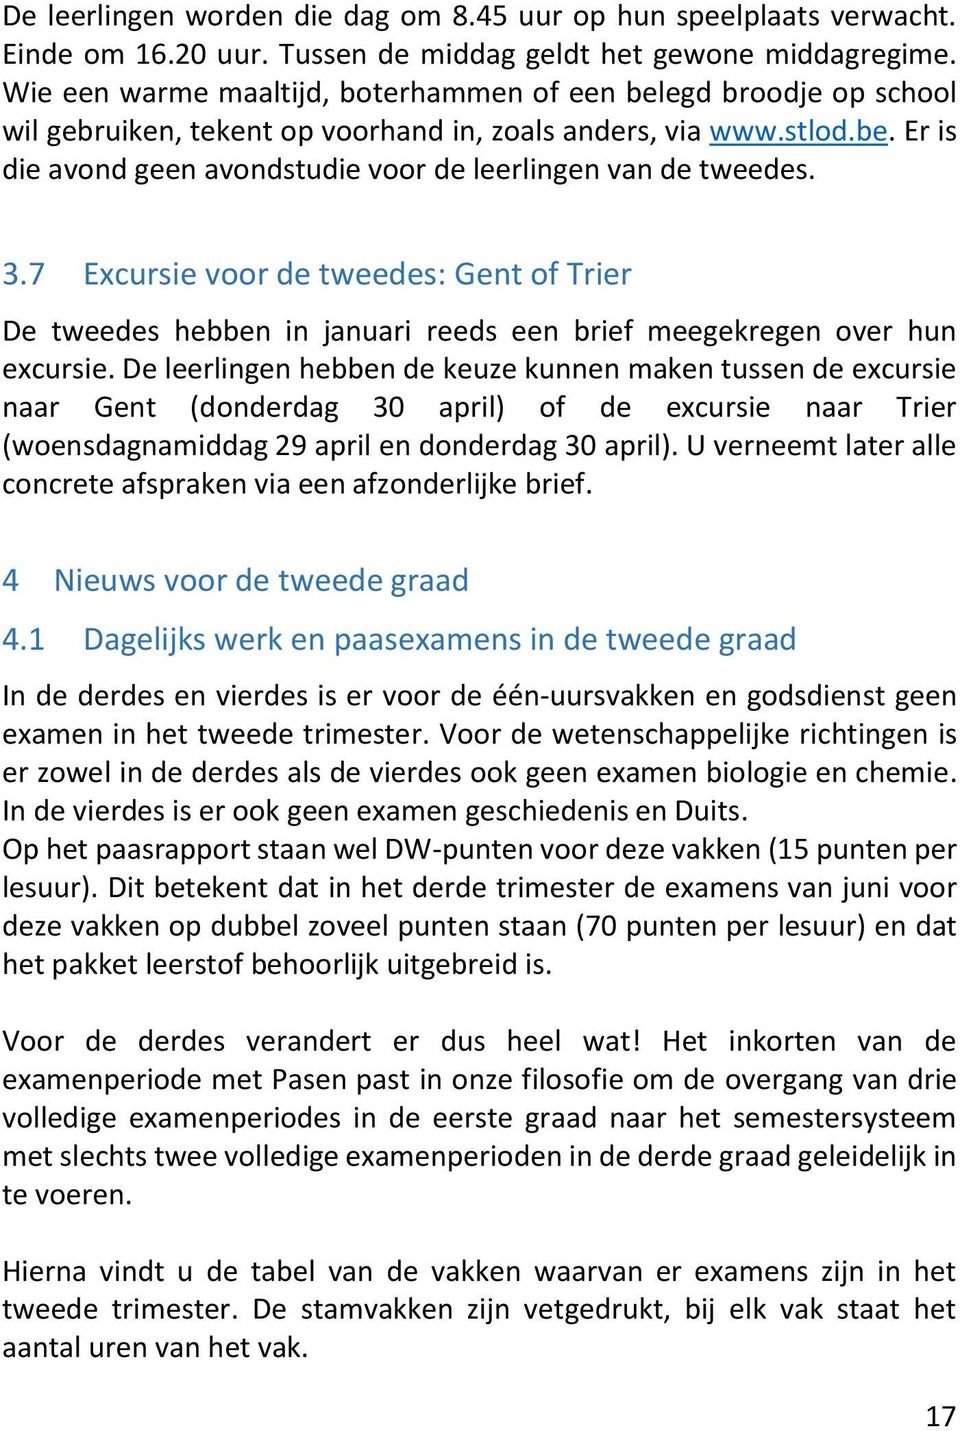 3.7 Excursie voor de tweedes: Gent of Trier De tweedes hebben in januari reeds een brief meegekregen over hun excursie.